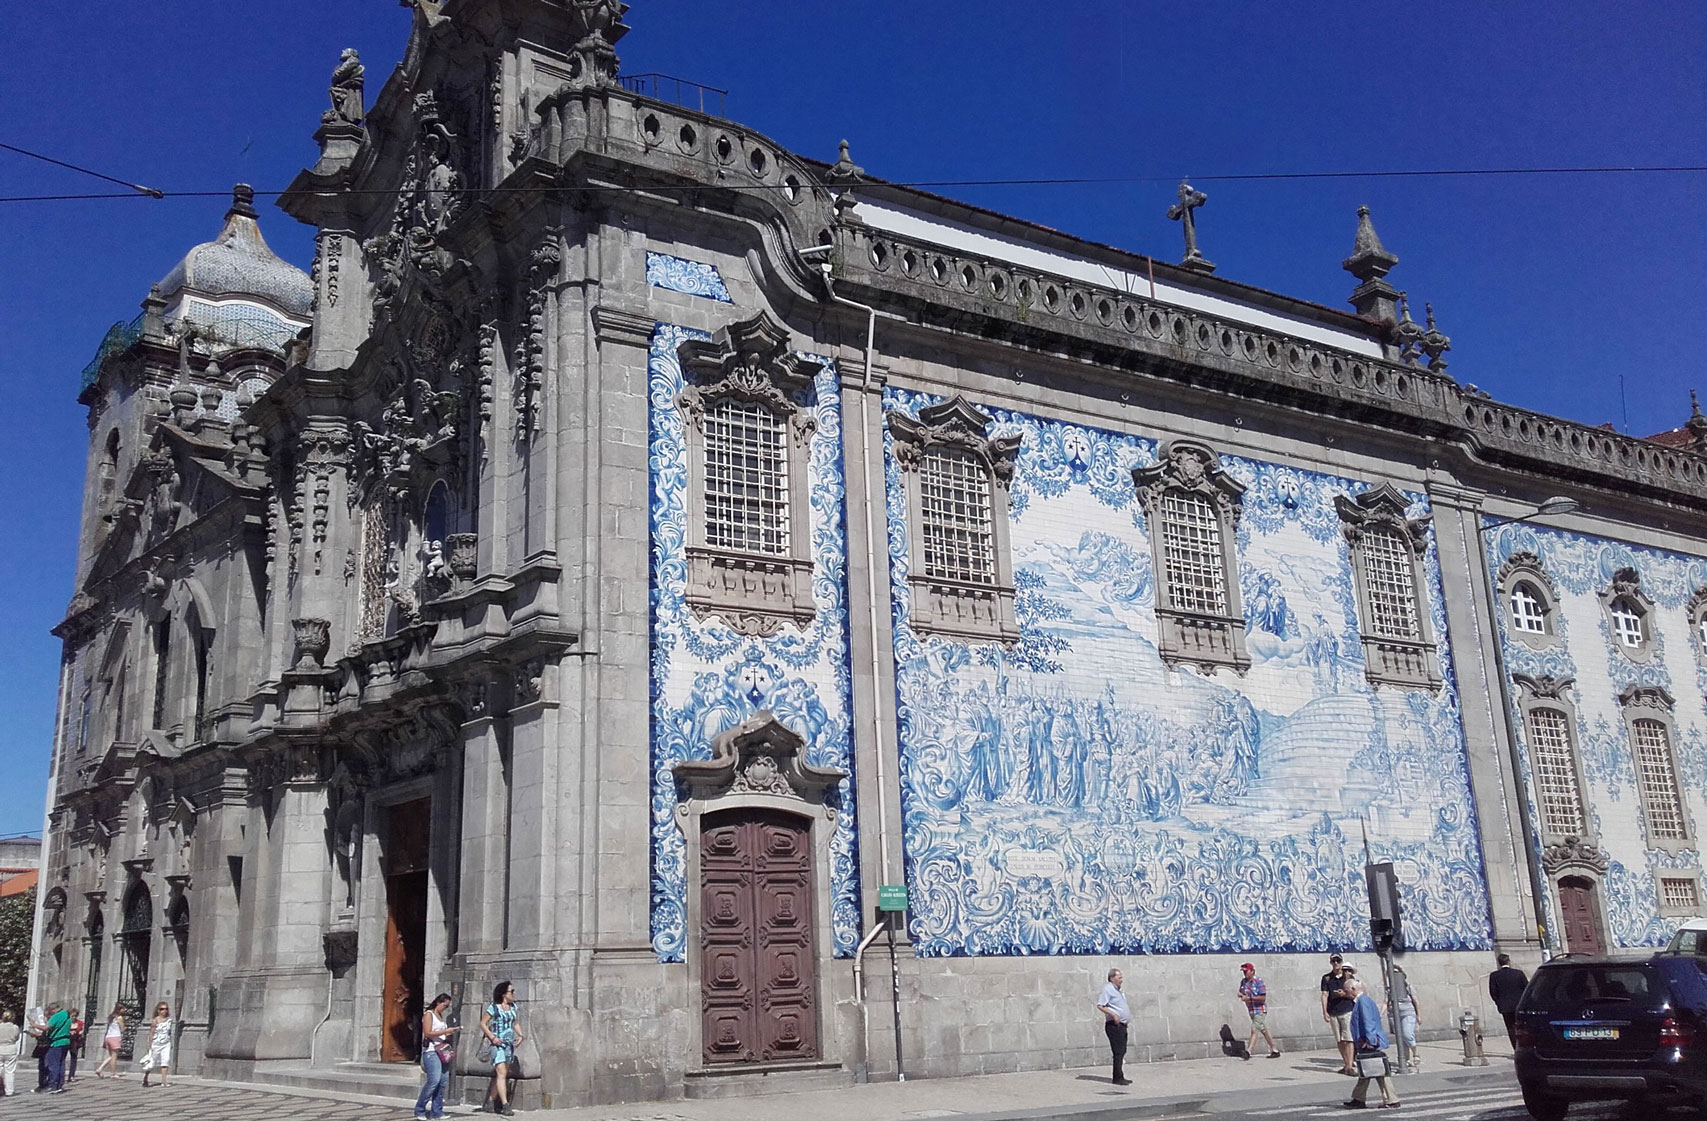 Cycling in Porto, Portugal's Igreja do Carmo church